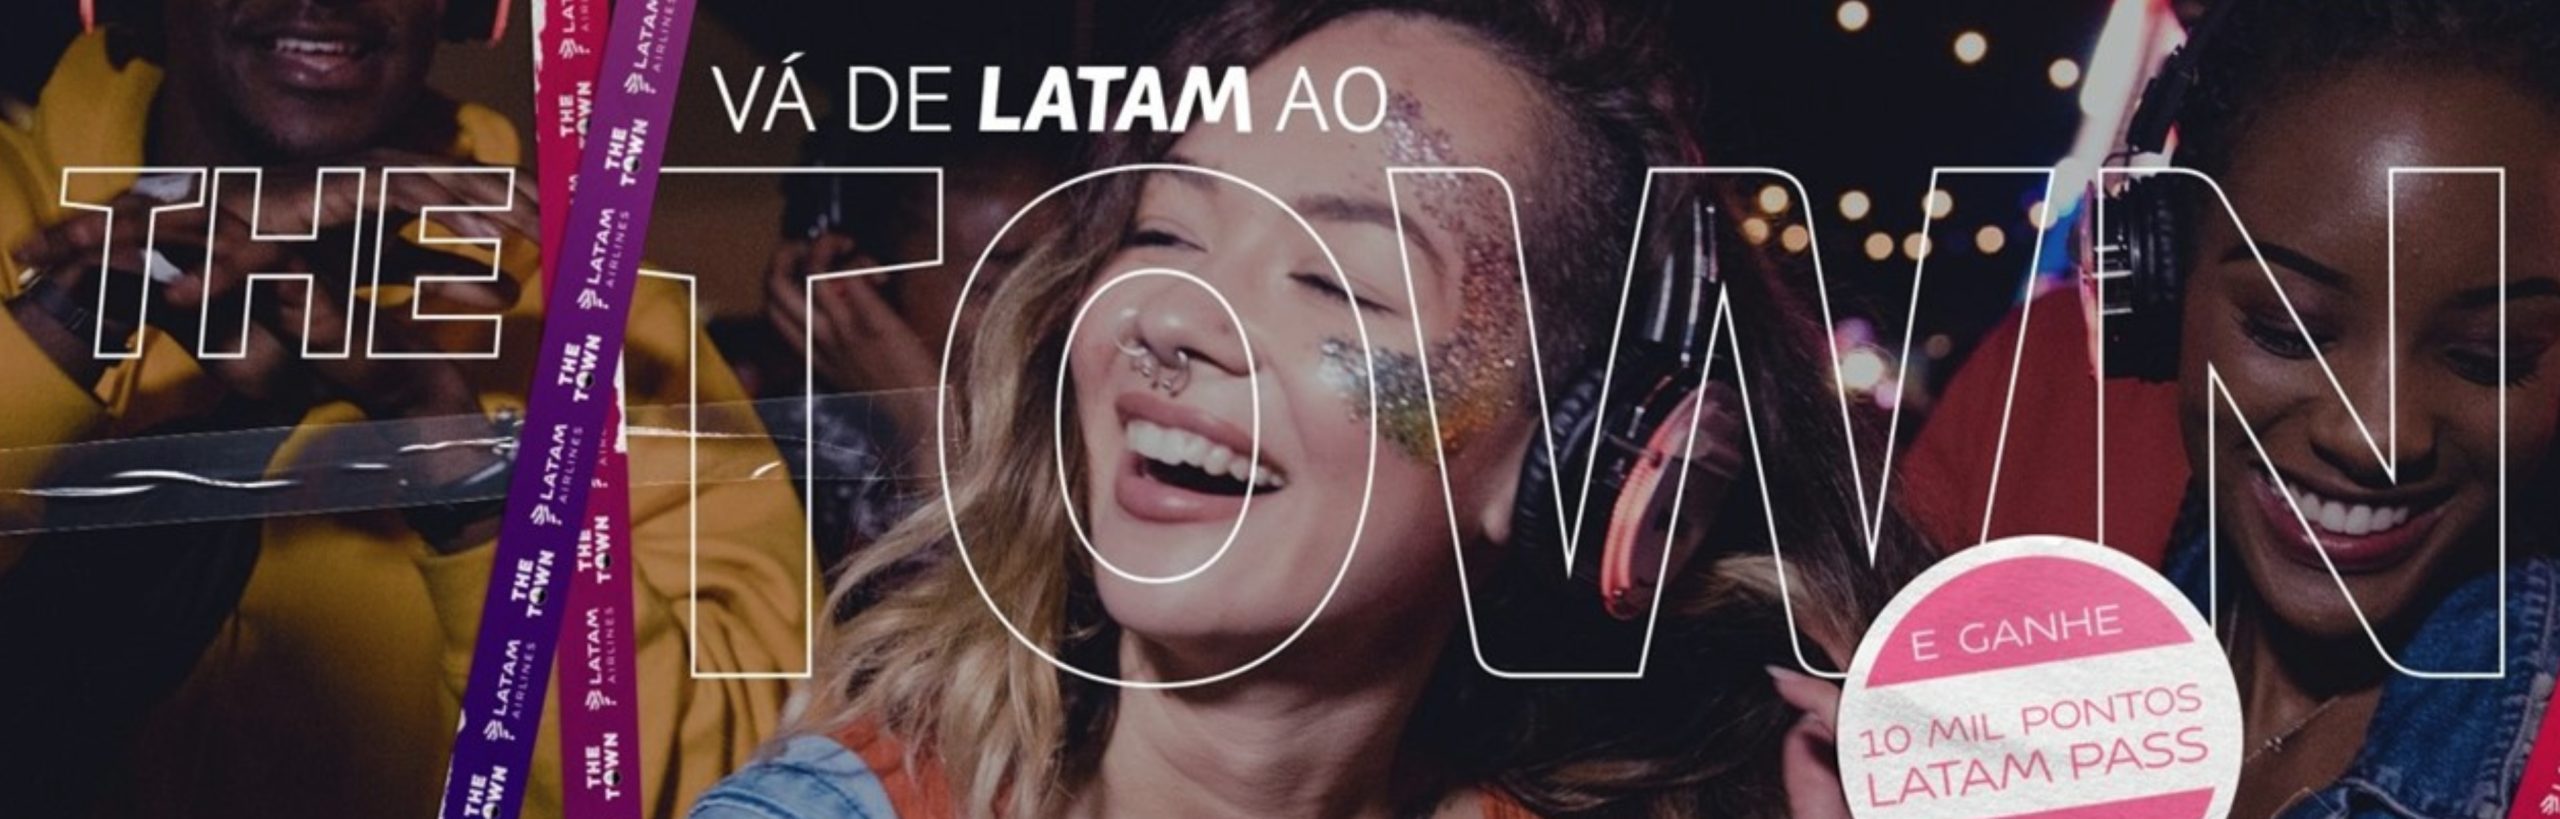 LATAM Pass dá 10 mil pontos em voos para festival de SP